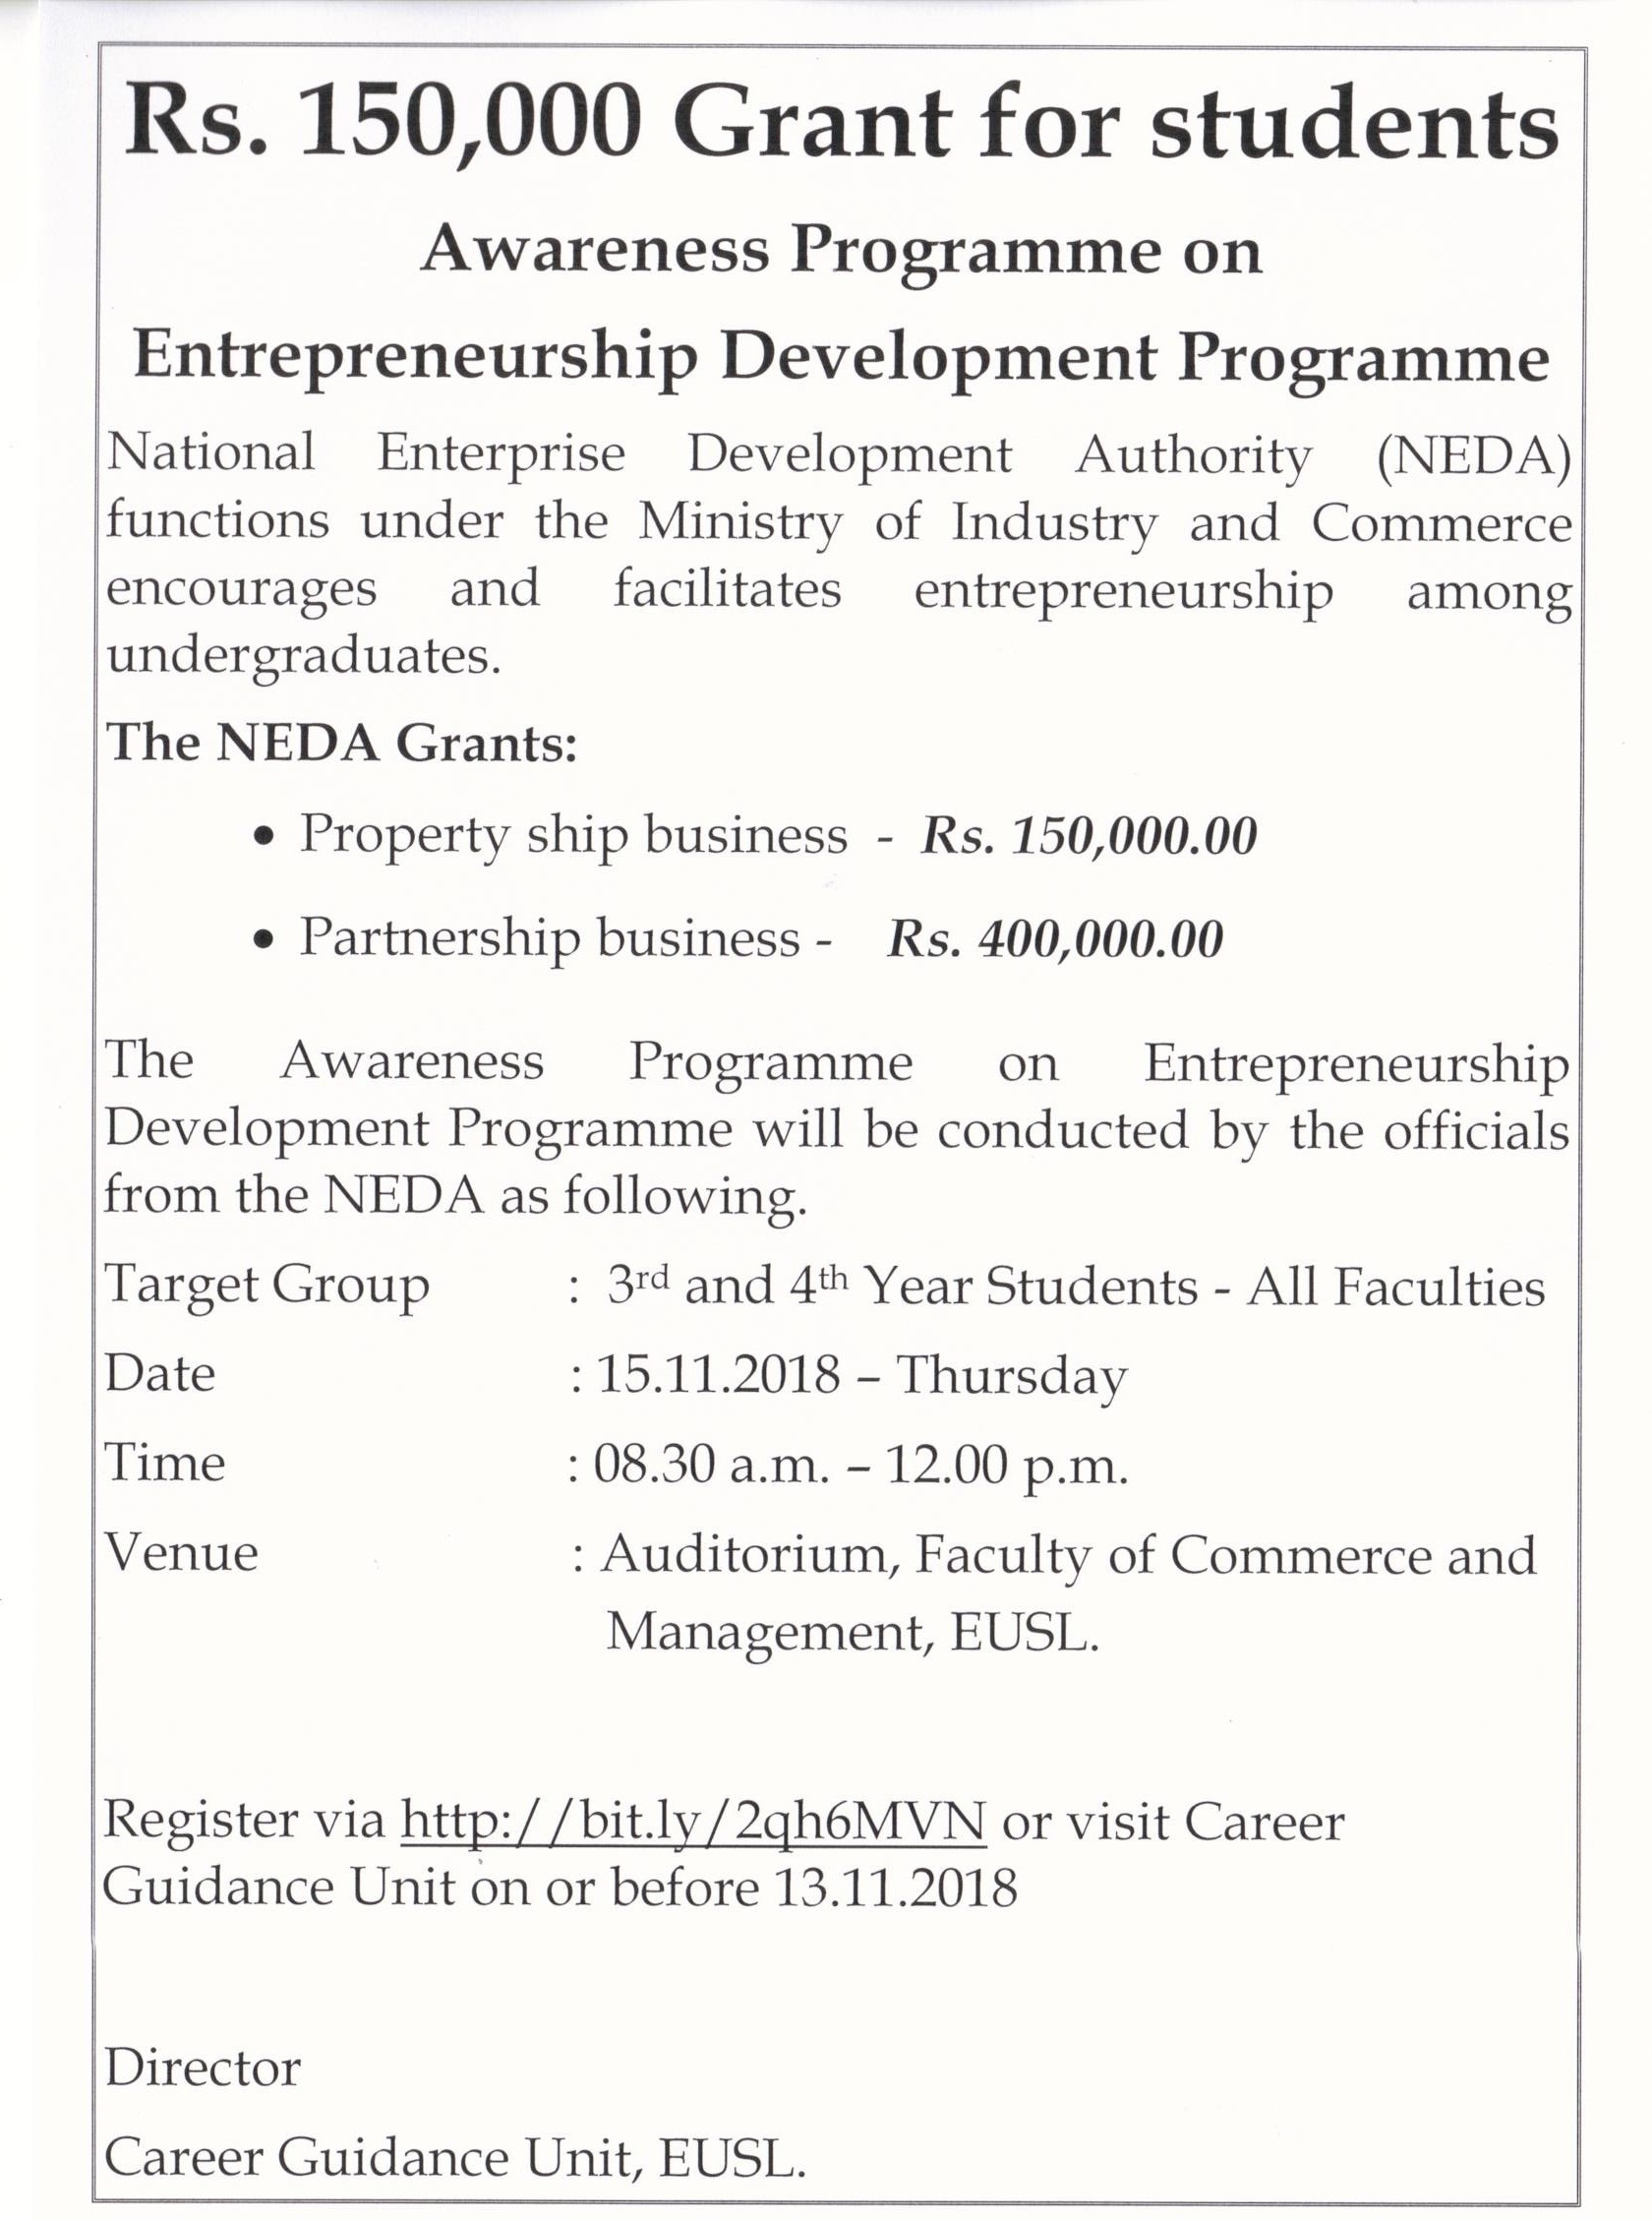 12112018-Awareness Programme on Entrepreneurship Development Programme 2